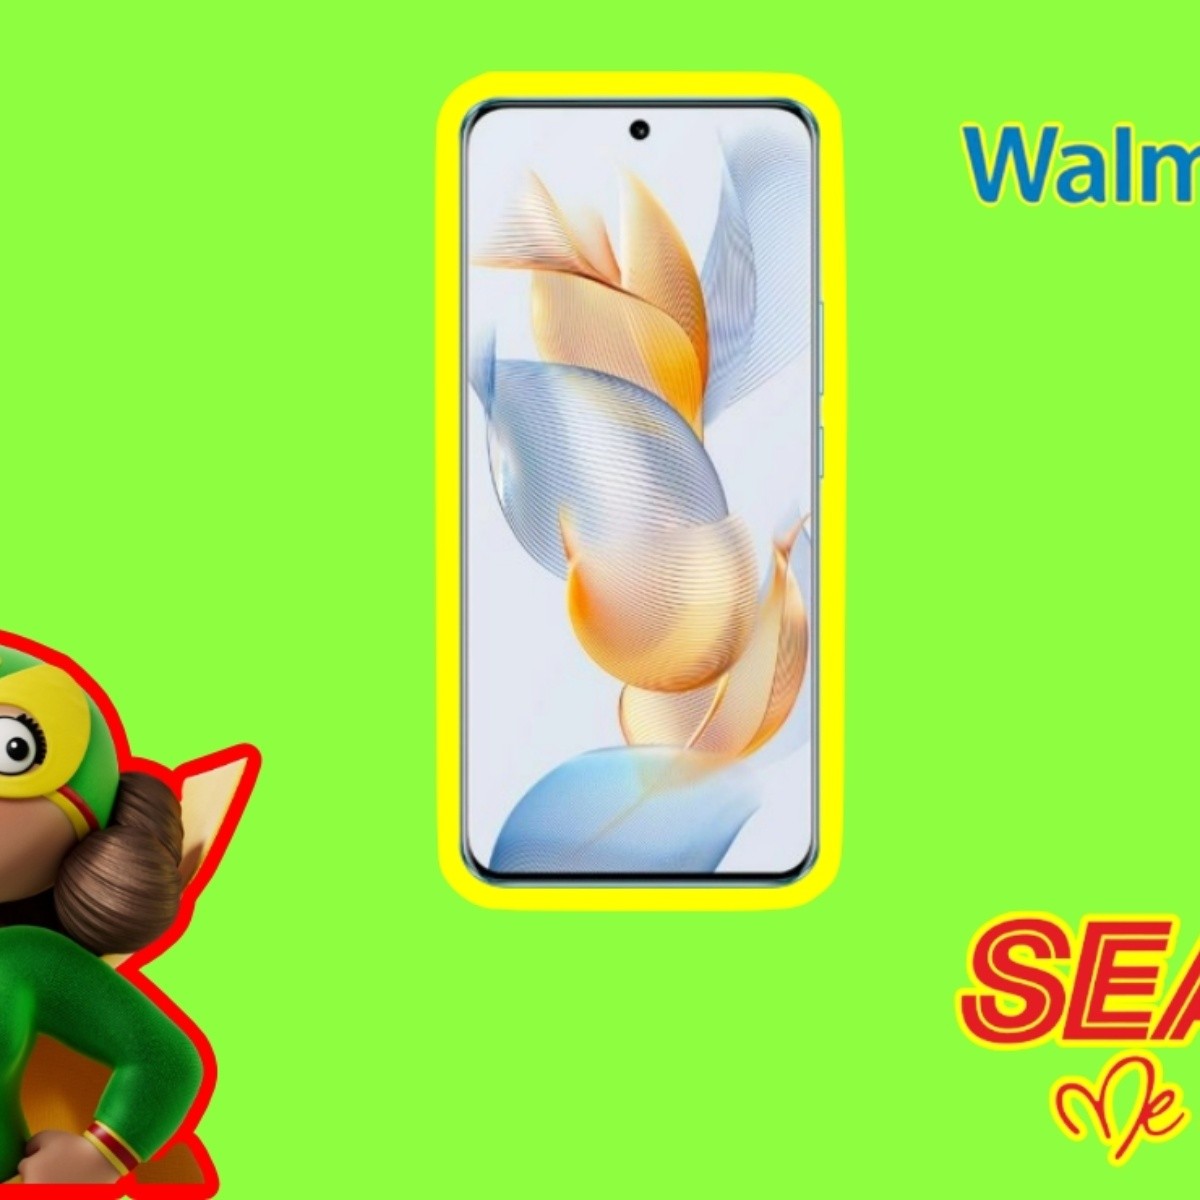 android, ¿bodega aurrera, sears o walmart? compra barato el honor 90 con 12 gb ram, 200mp y selfie 4k